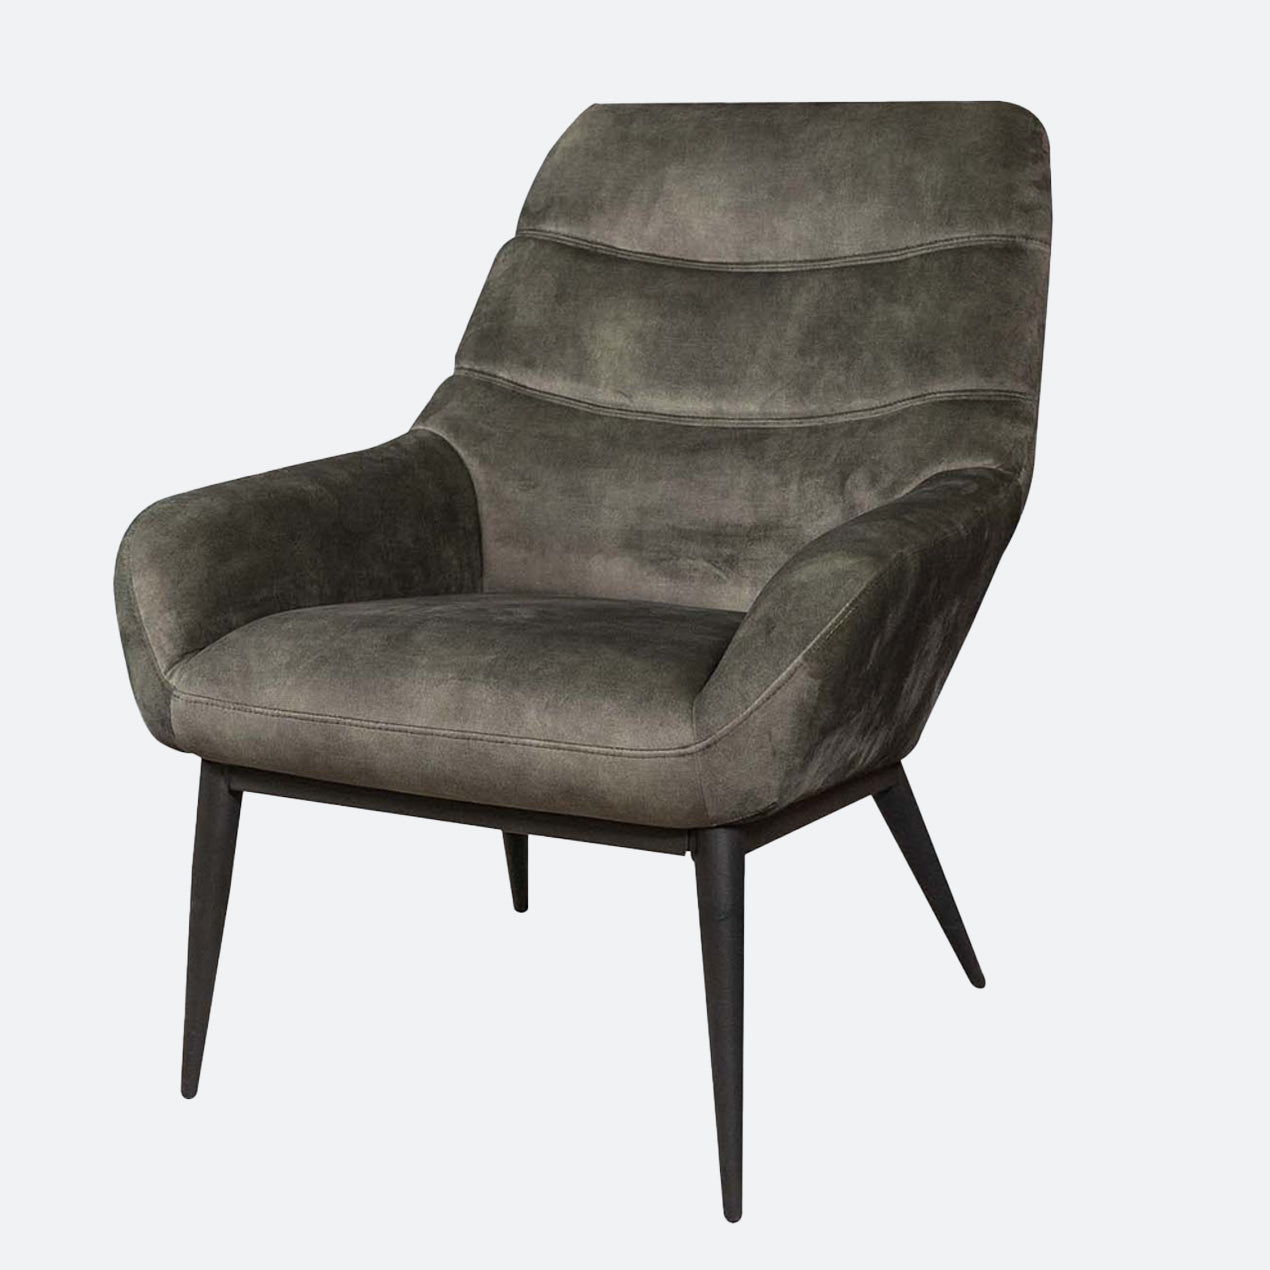 Een mooie fauteuils in scandinavische stijl. Deze fauteuils scandinavisch passen perfect binnen jouw interieur. 